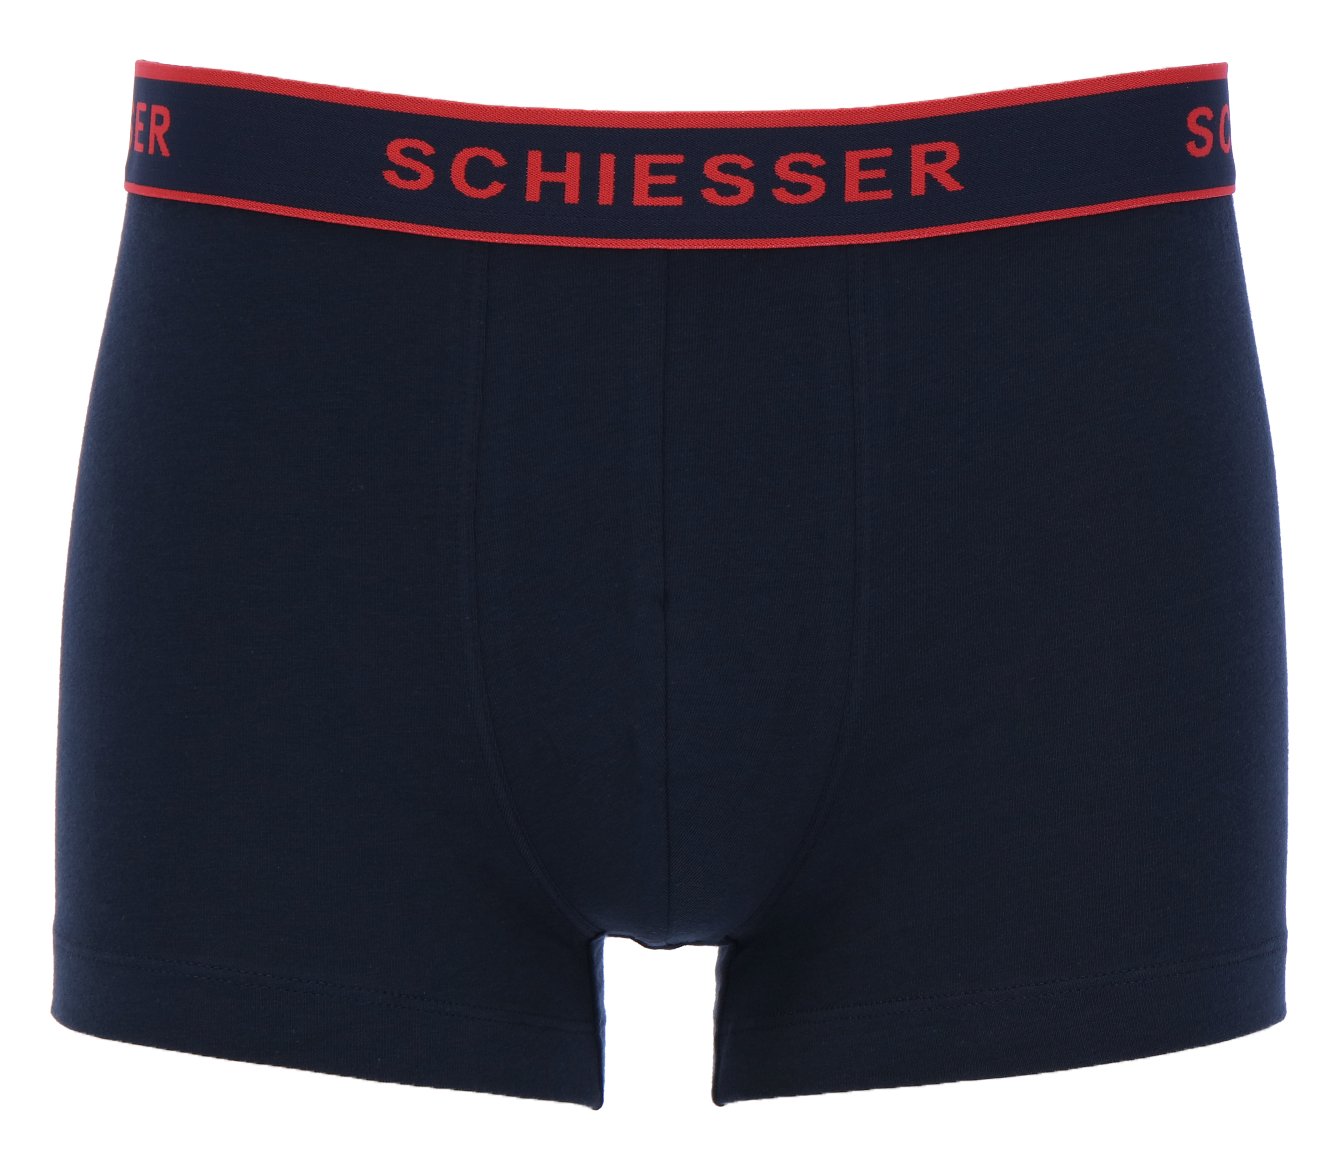 SCHIESSER 3 PACK SHORTS LOGO Herren Shorts - Schiesser - SAGATOO - 4007065979643